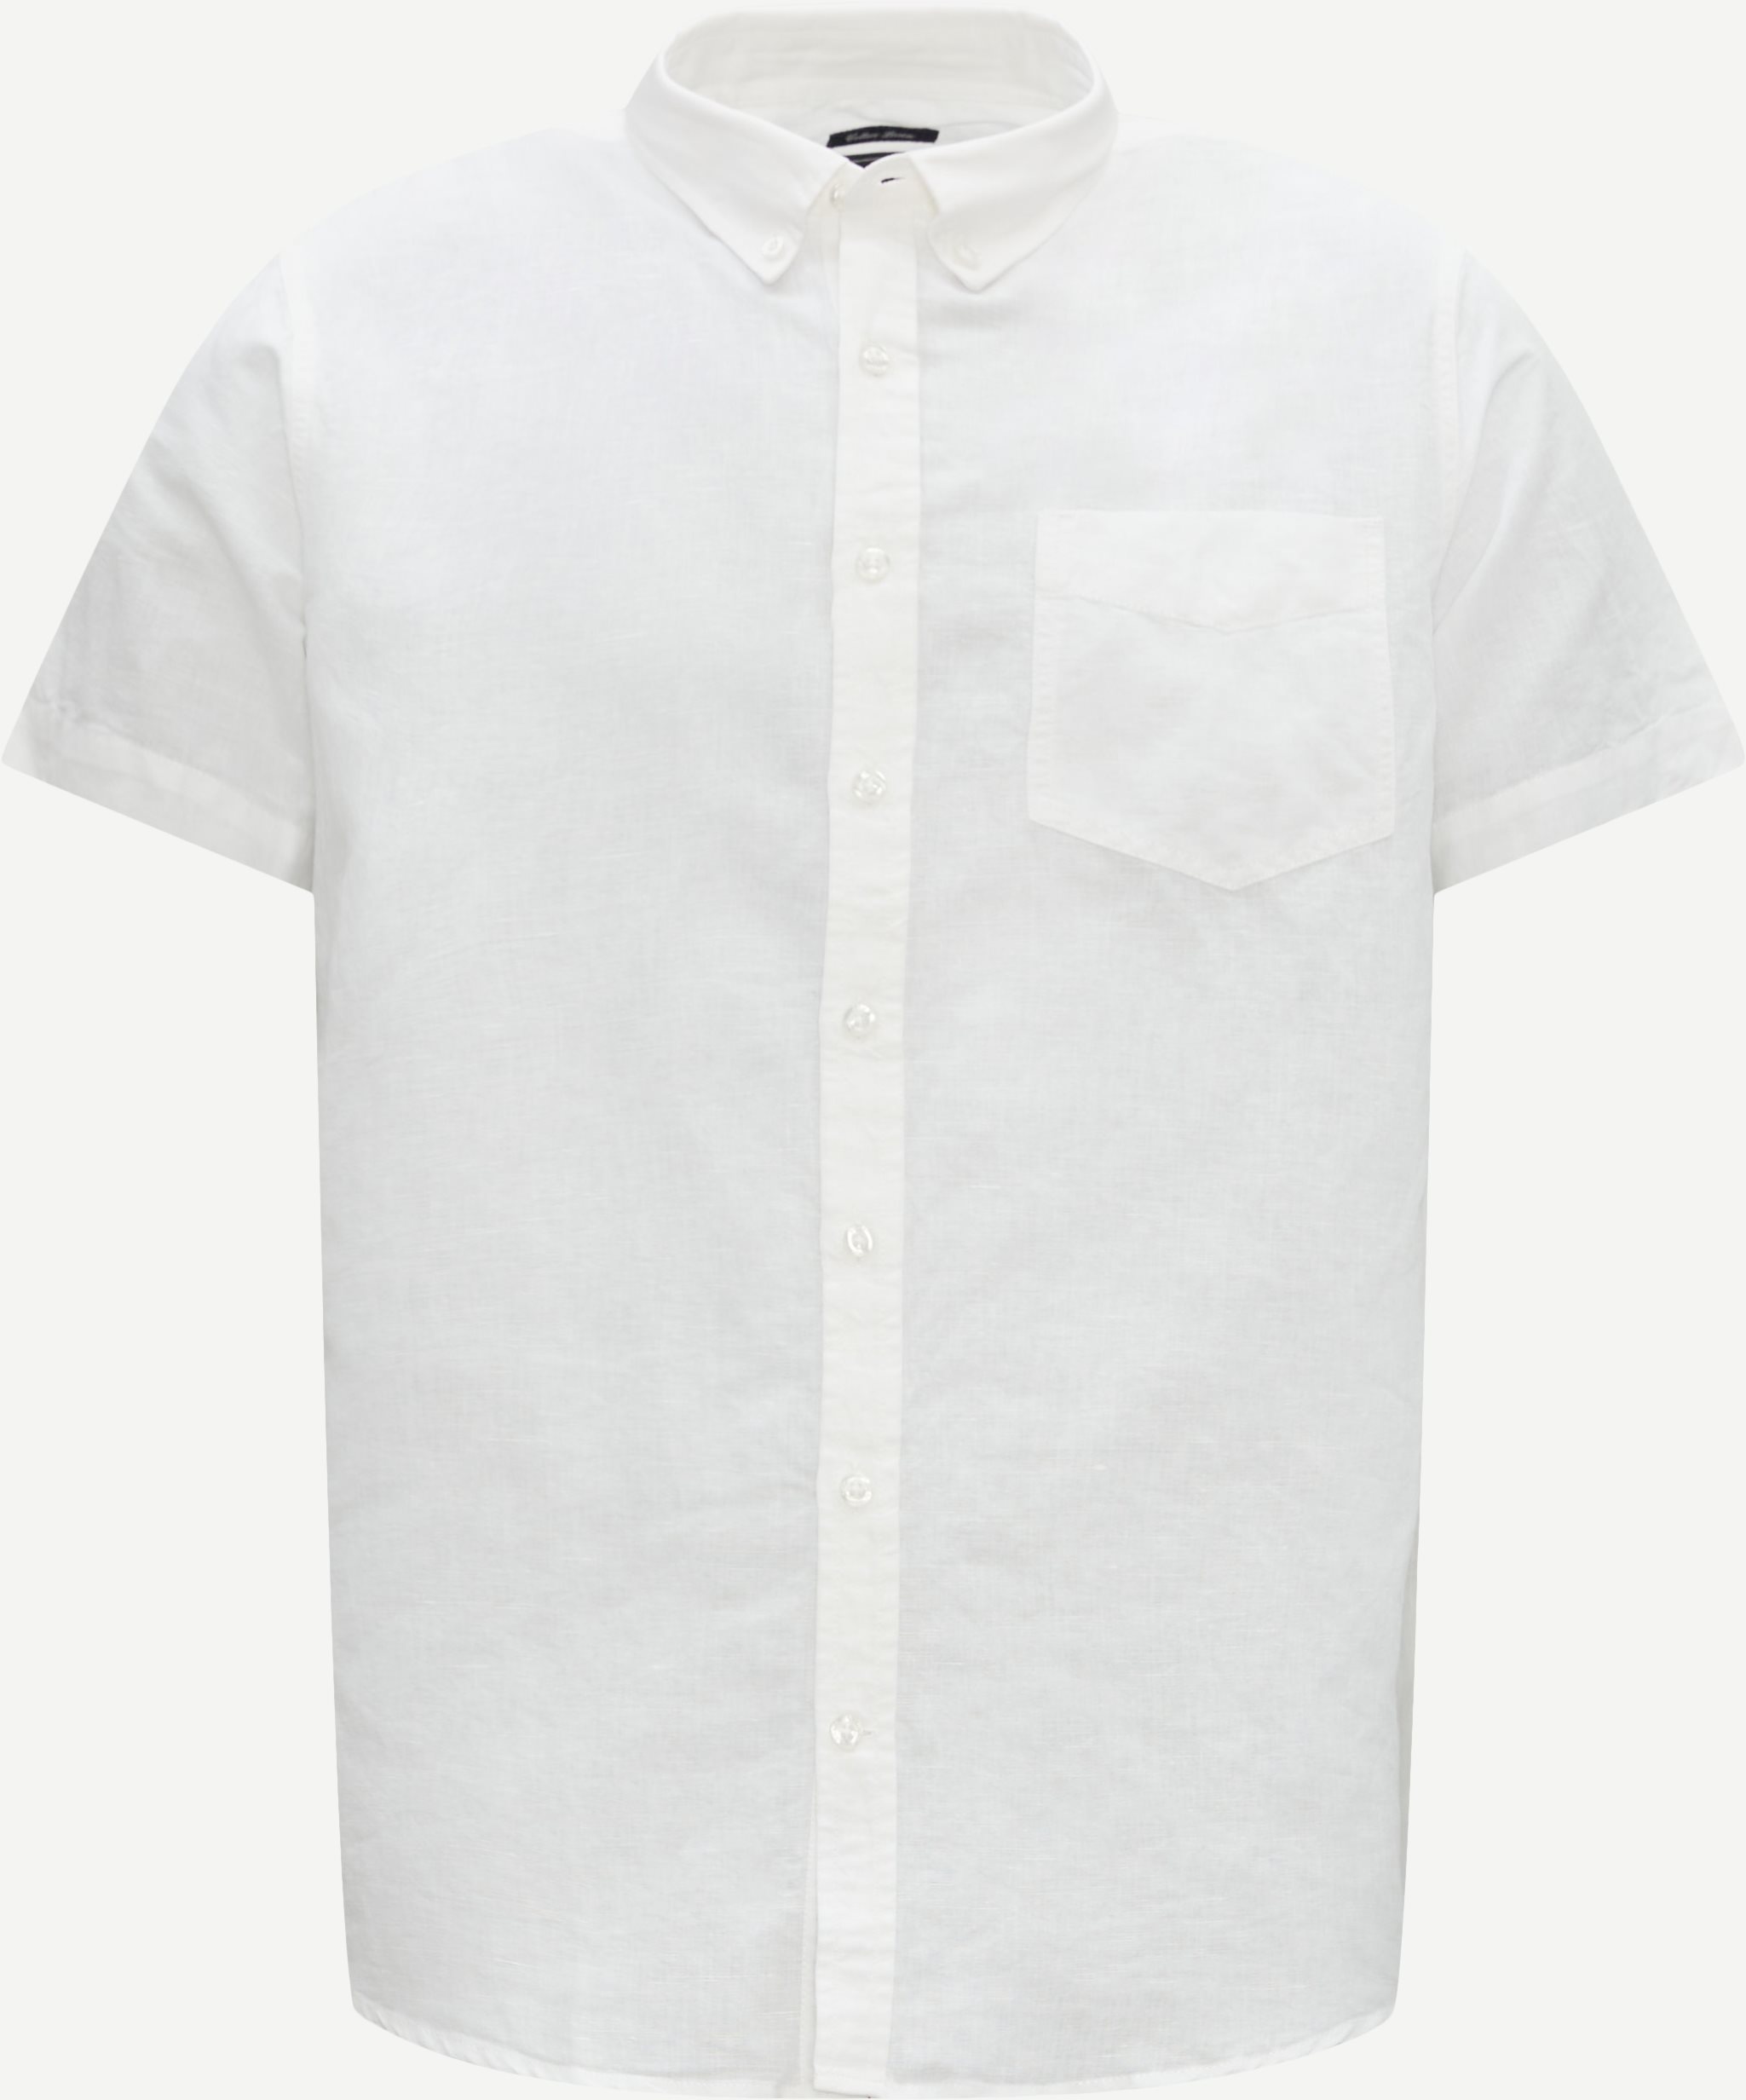 Signal Short-sleeved shirts 15512 1773 2302 White